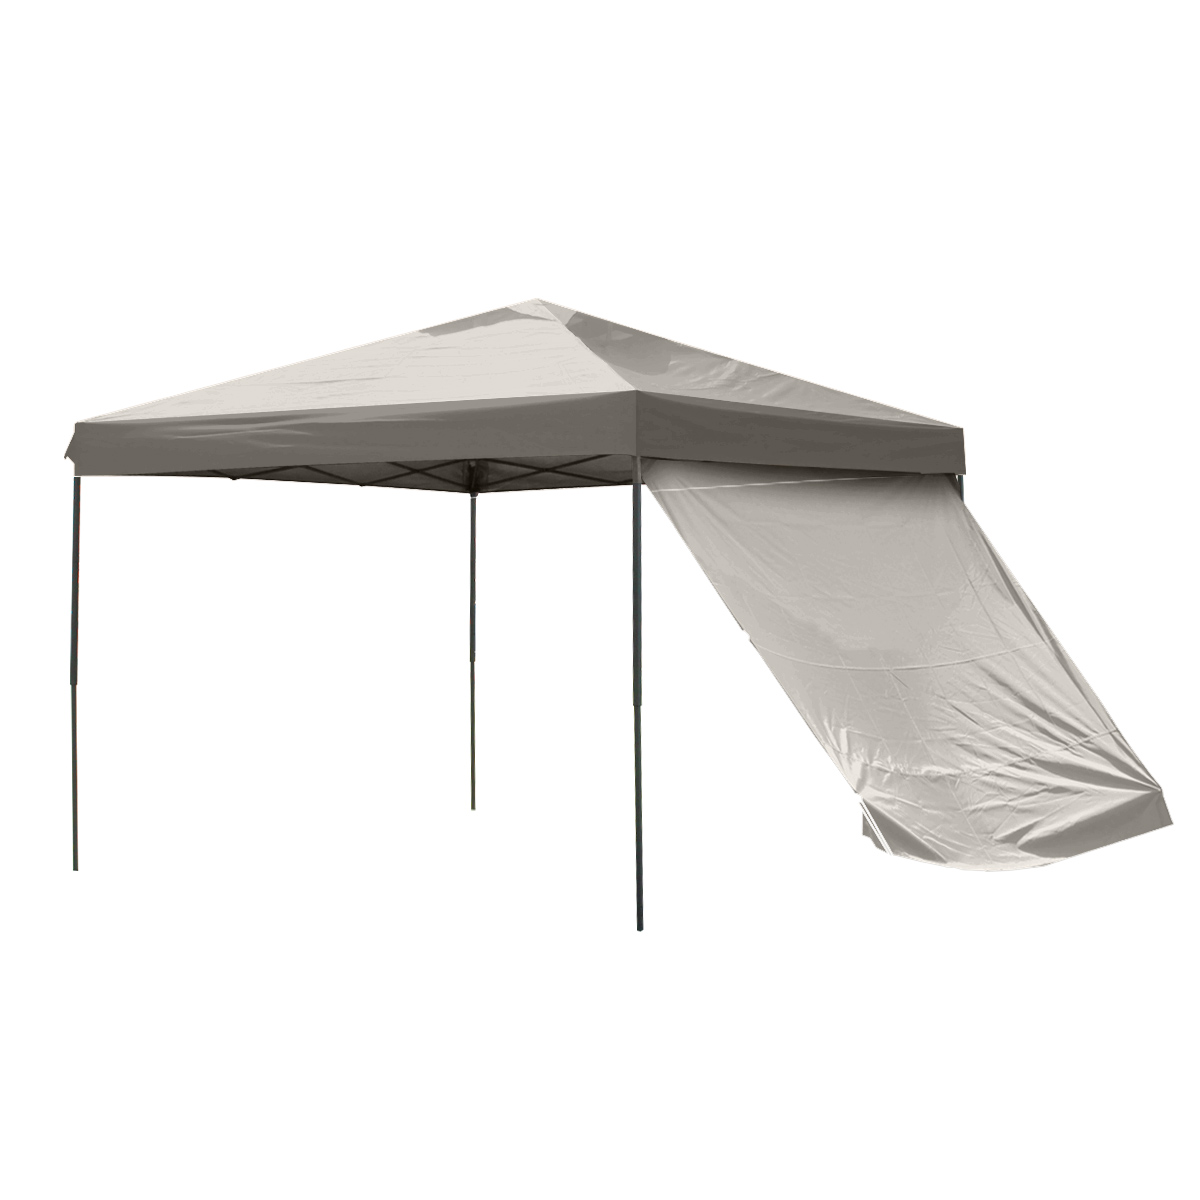 タープテント 3m サイドシート2枚付き 高さ調整可能 テント タープ ワンタッチ サンシェード 軽量 日よけ 耐水 撥水 UVカット キャンプ  アウトドア BBQ MERMONT